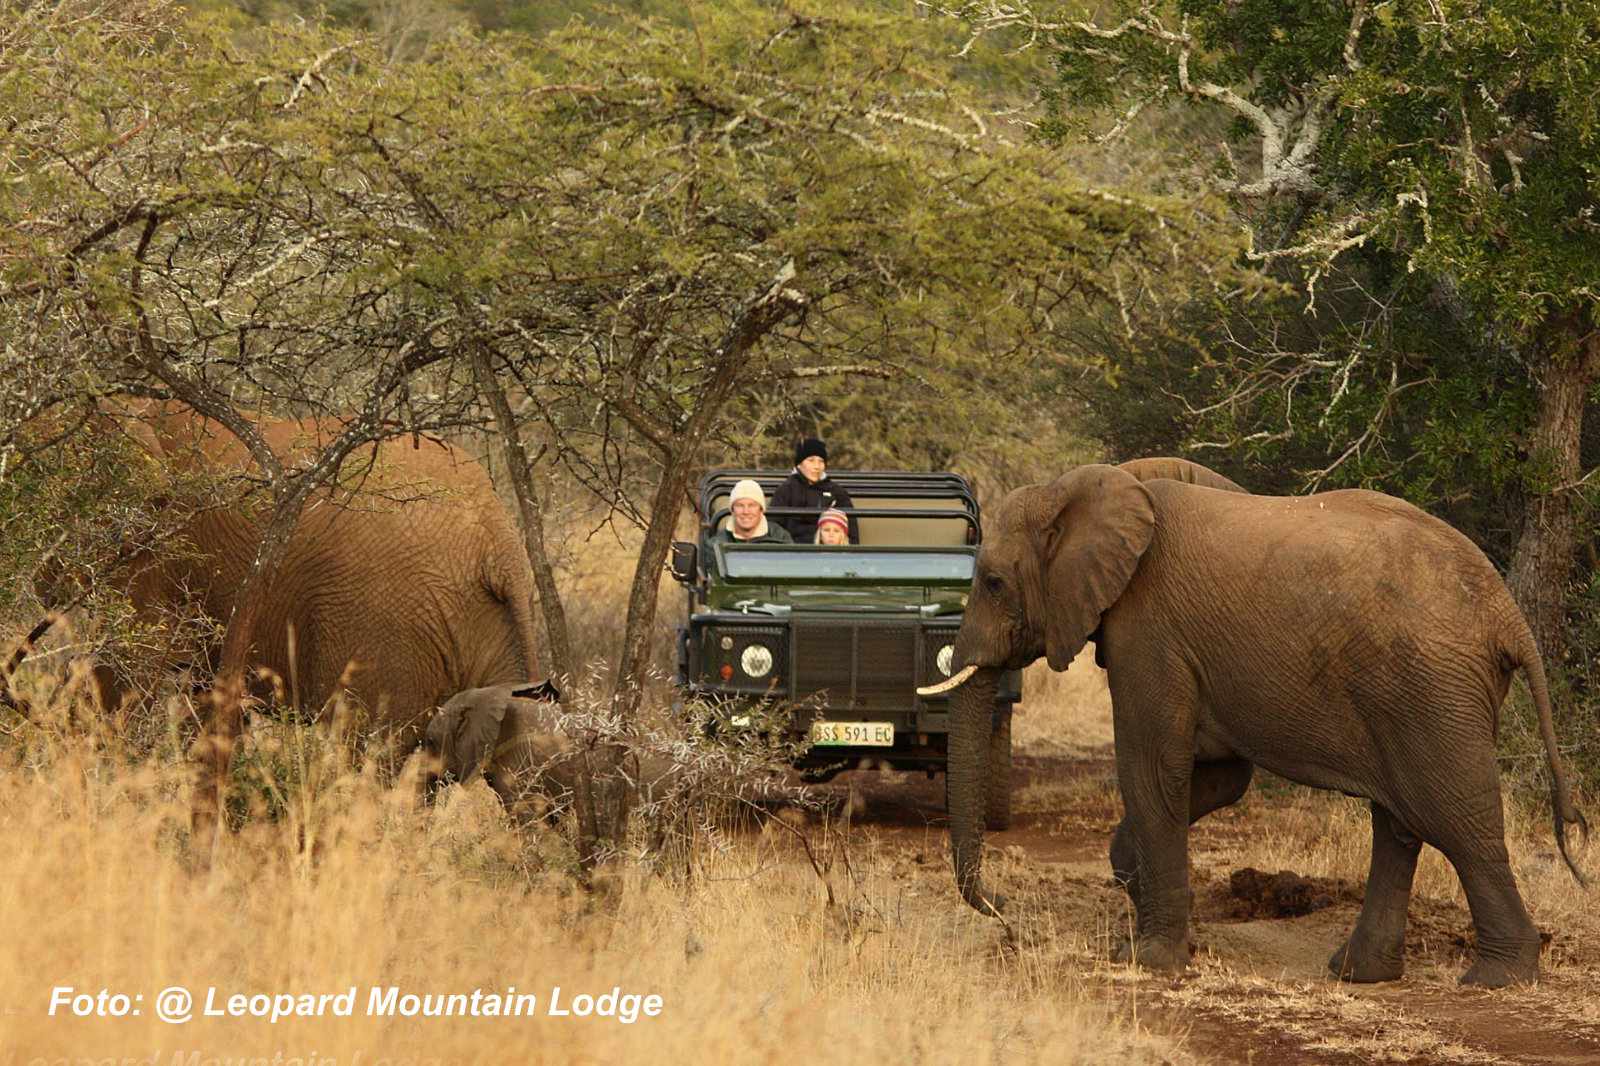 Südafrika Leopard Mountian Lodge Elefant bei Pirschfahrt